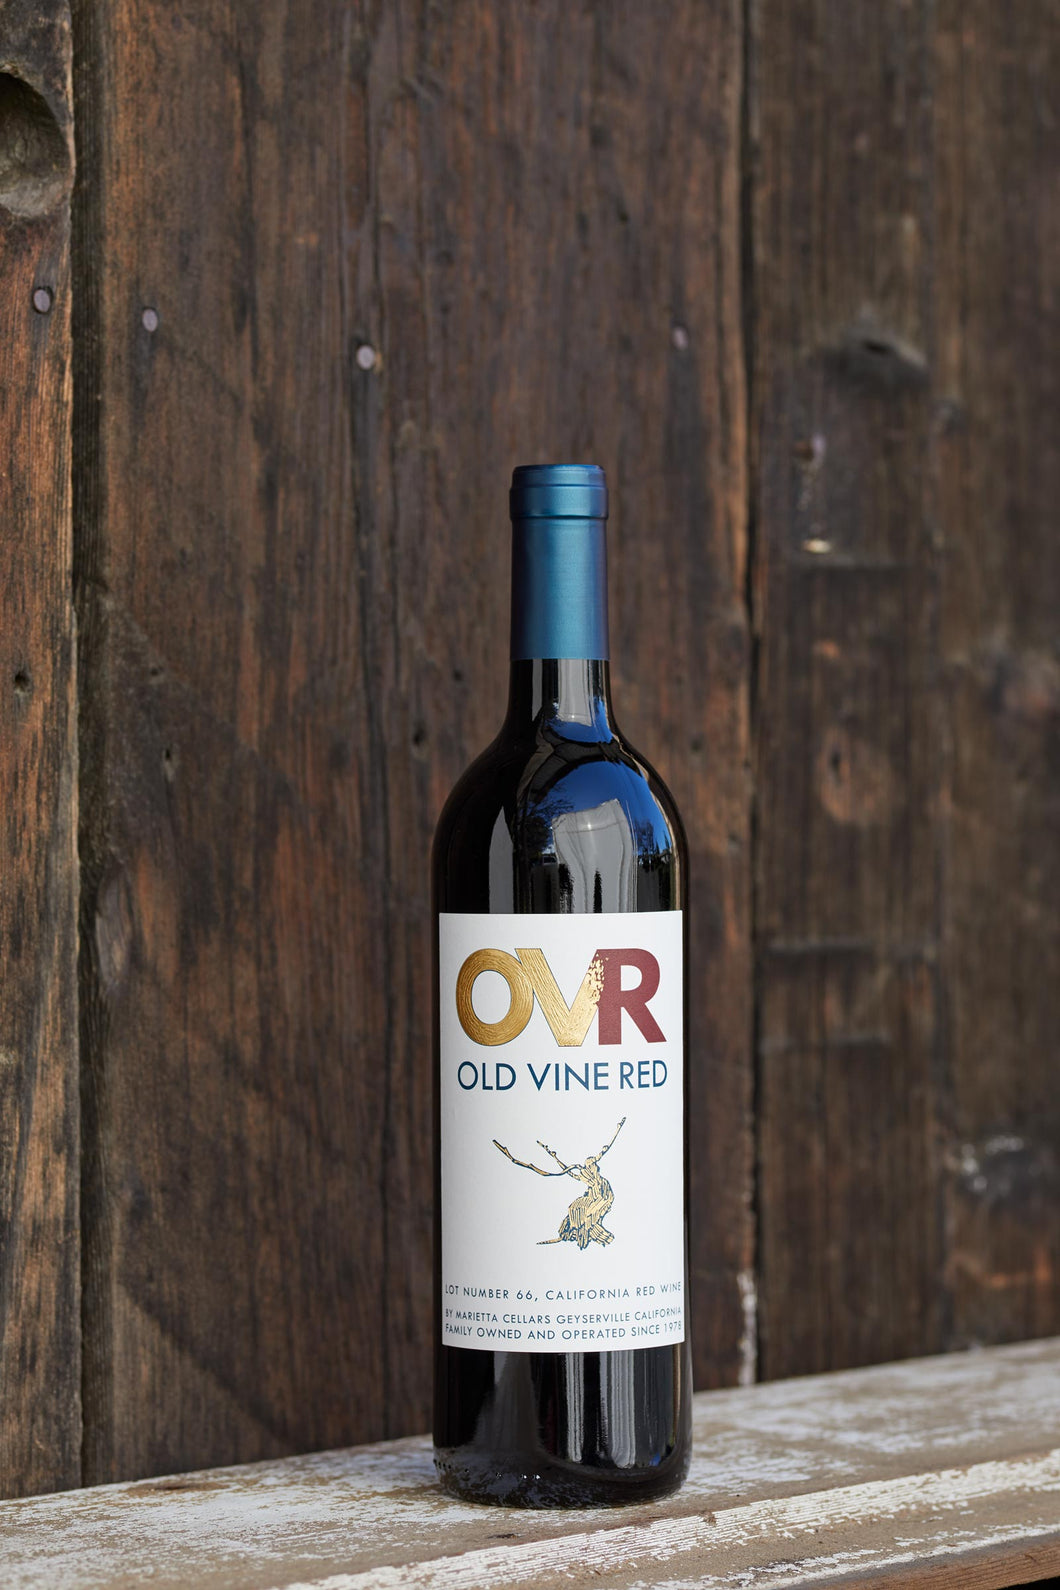 OVR Old Vine Red Lot 68